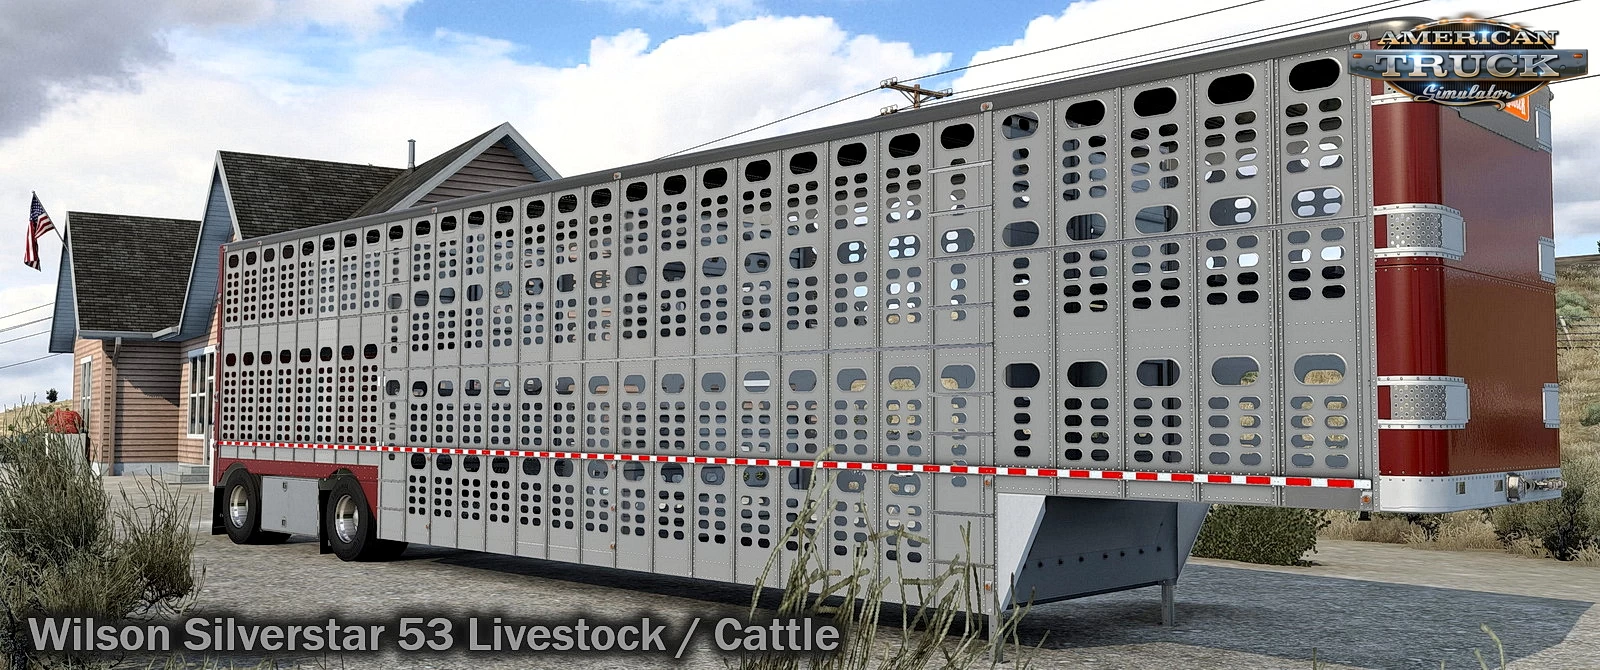 Wilson Silverstar 53 Livestock / Cattle v1.1.8 (1.49.x) for ATS